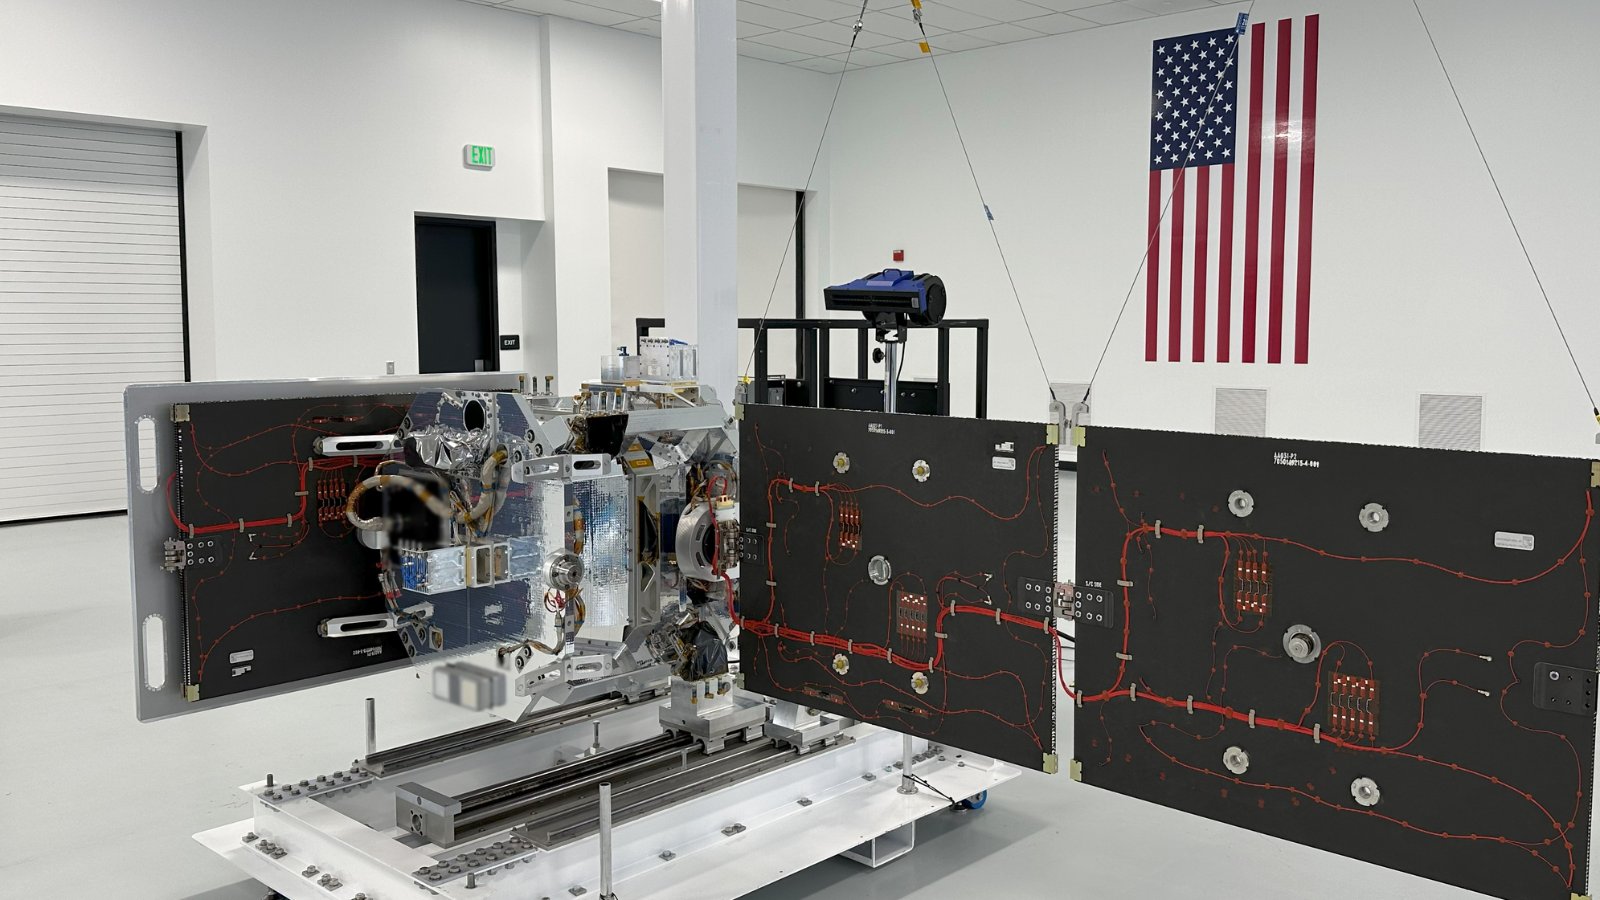  Один из двух первых автономных орбитальных аппаратов «Jackal» компании True Anomaly, которые были запущены в марте в рамках программы SpaceX rideshare.